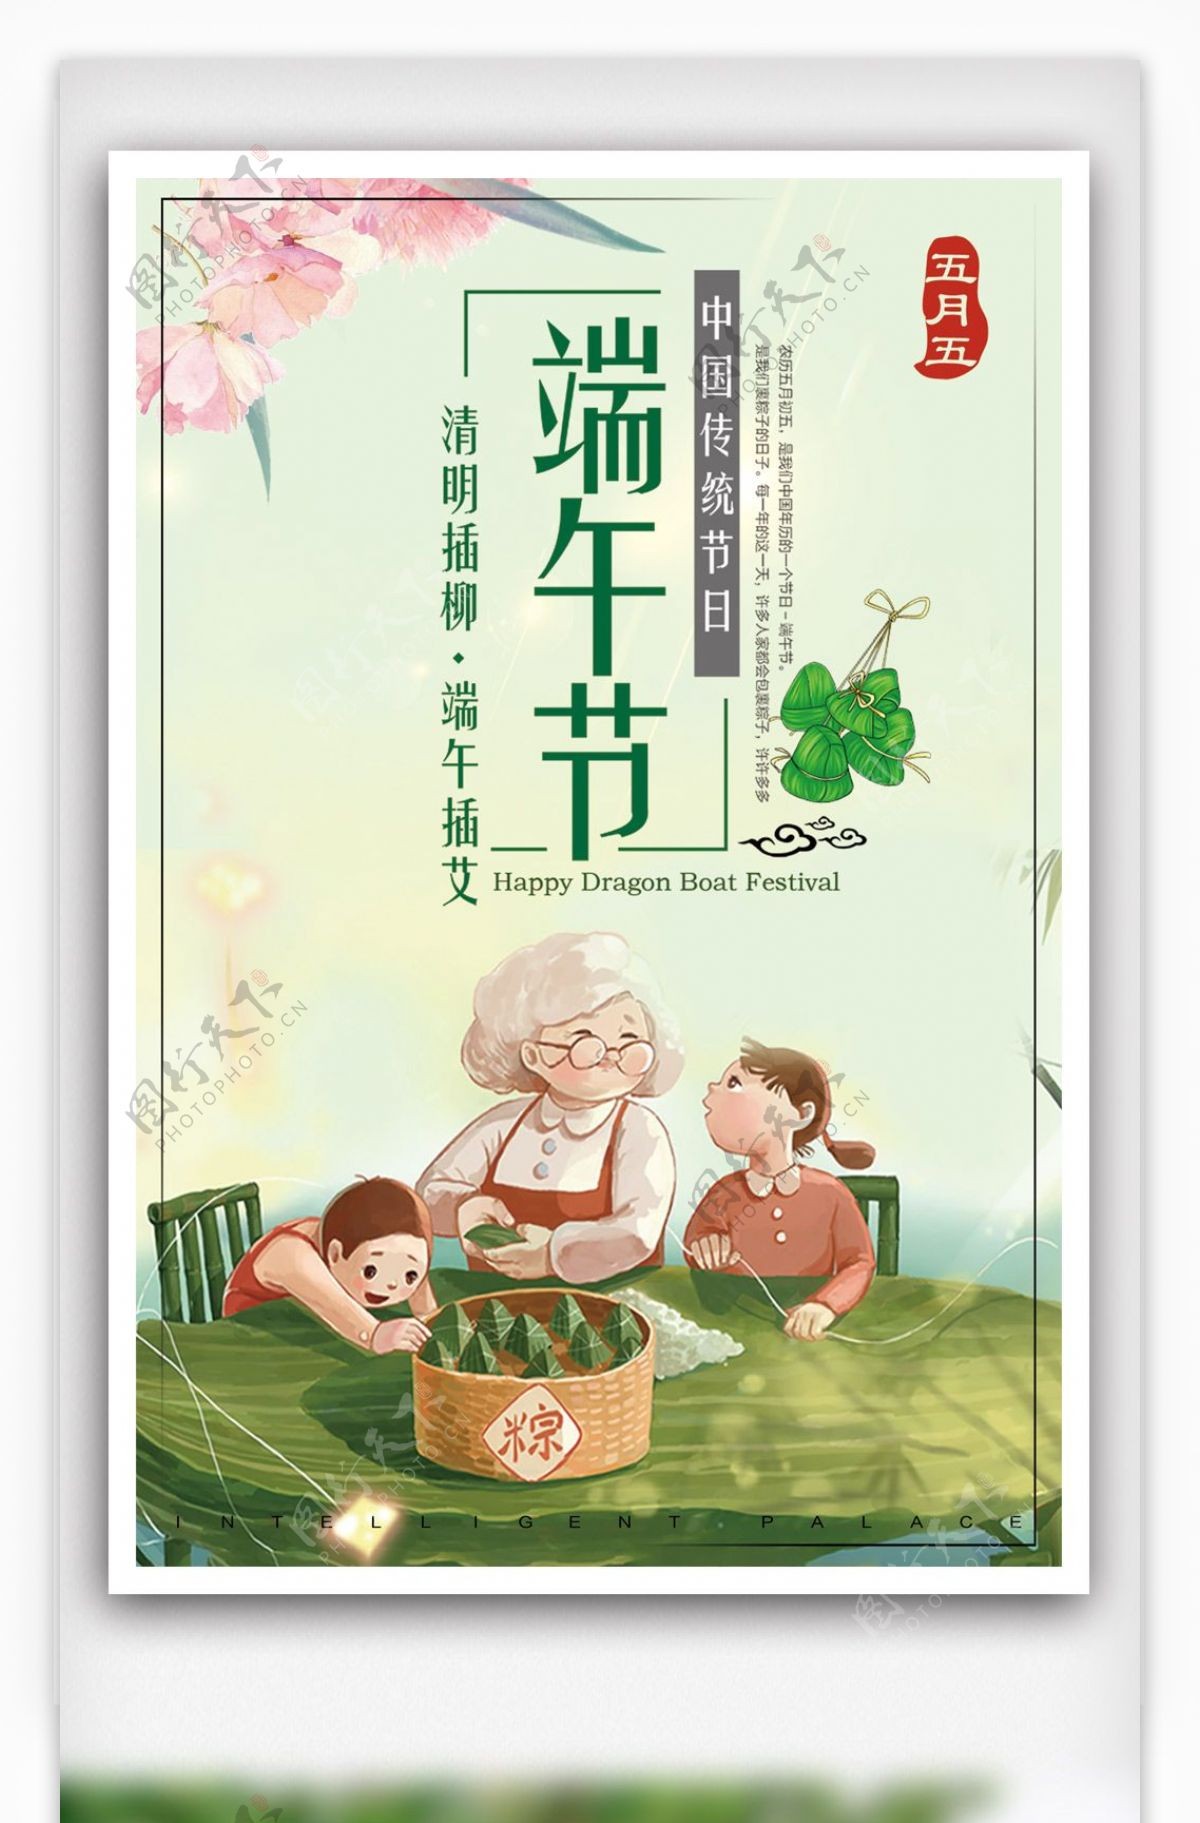 简约大气5月5中国传统节日端午节海报